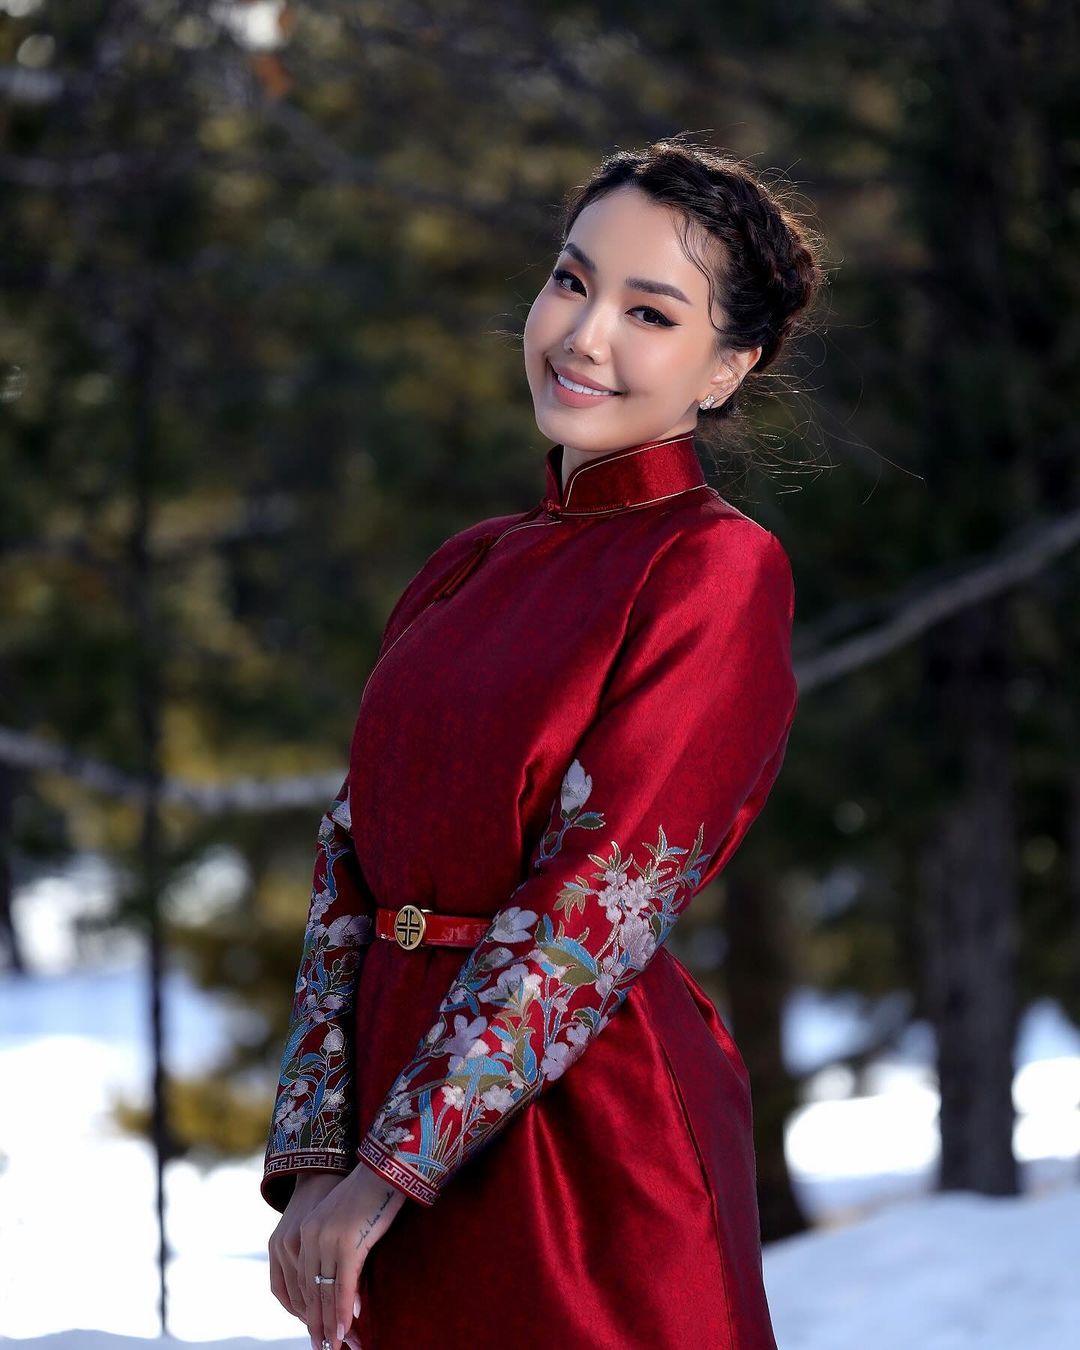 Mongolian women wear red deel clothes